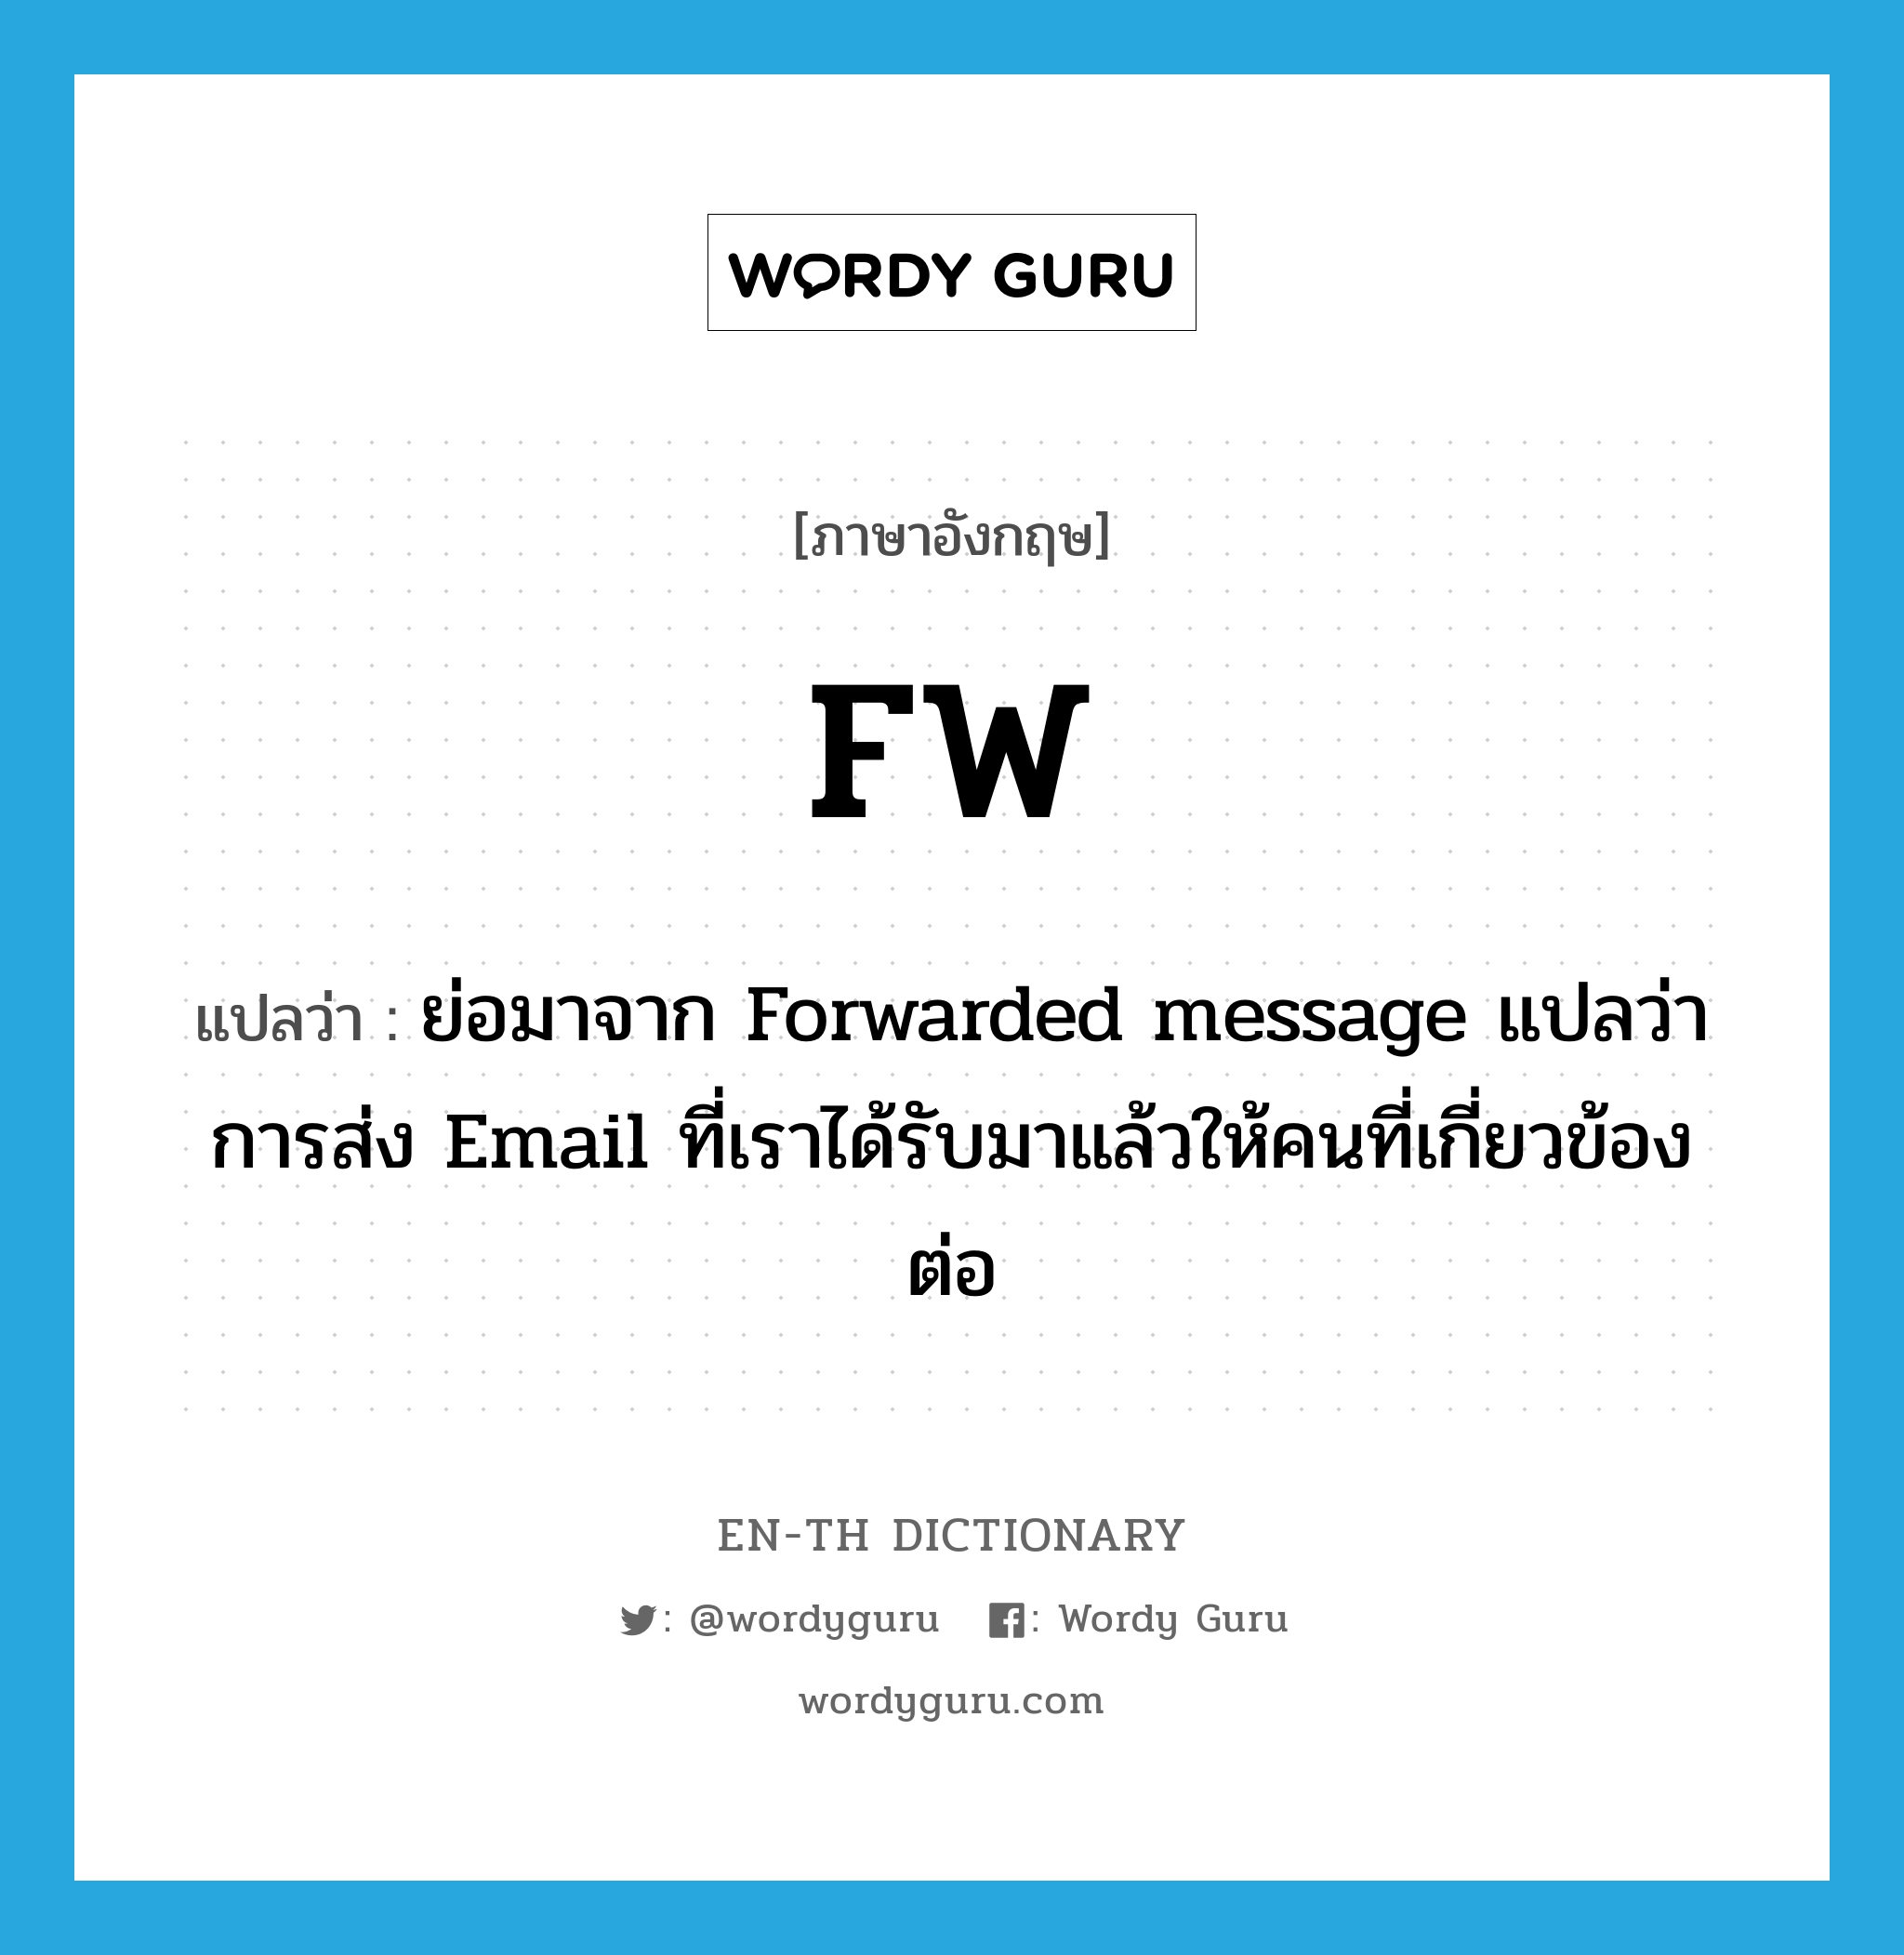 ย่อมาจาก Forwarded message แปลว่า การส่ง Email ที่เราได้รับมาแล้วให้คนที่เกี่ยวข้องต่อ ภาษาอังกฤษ?, คำศัพท์ภาษาอังกฤษ ย่อมาจาก Forwarded message แปลว่า การส่ง Email ที่เราได้รับมาแล้วให้คนที่เกี่ยวข้องต่อ แปลว่า FW ประเภท abbr หมวด abbr